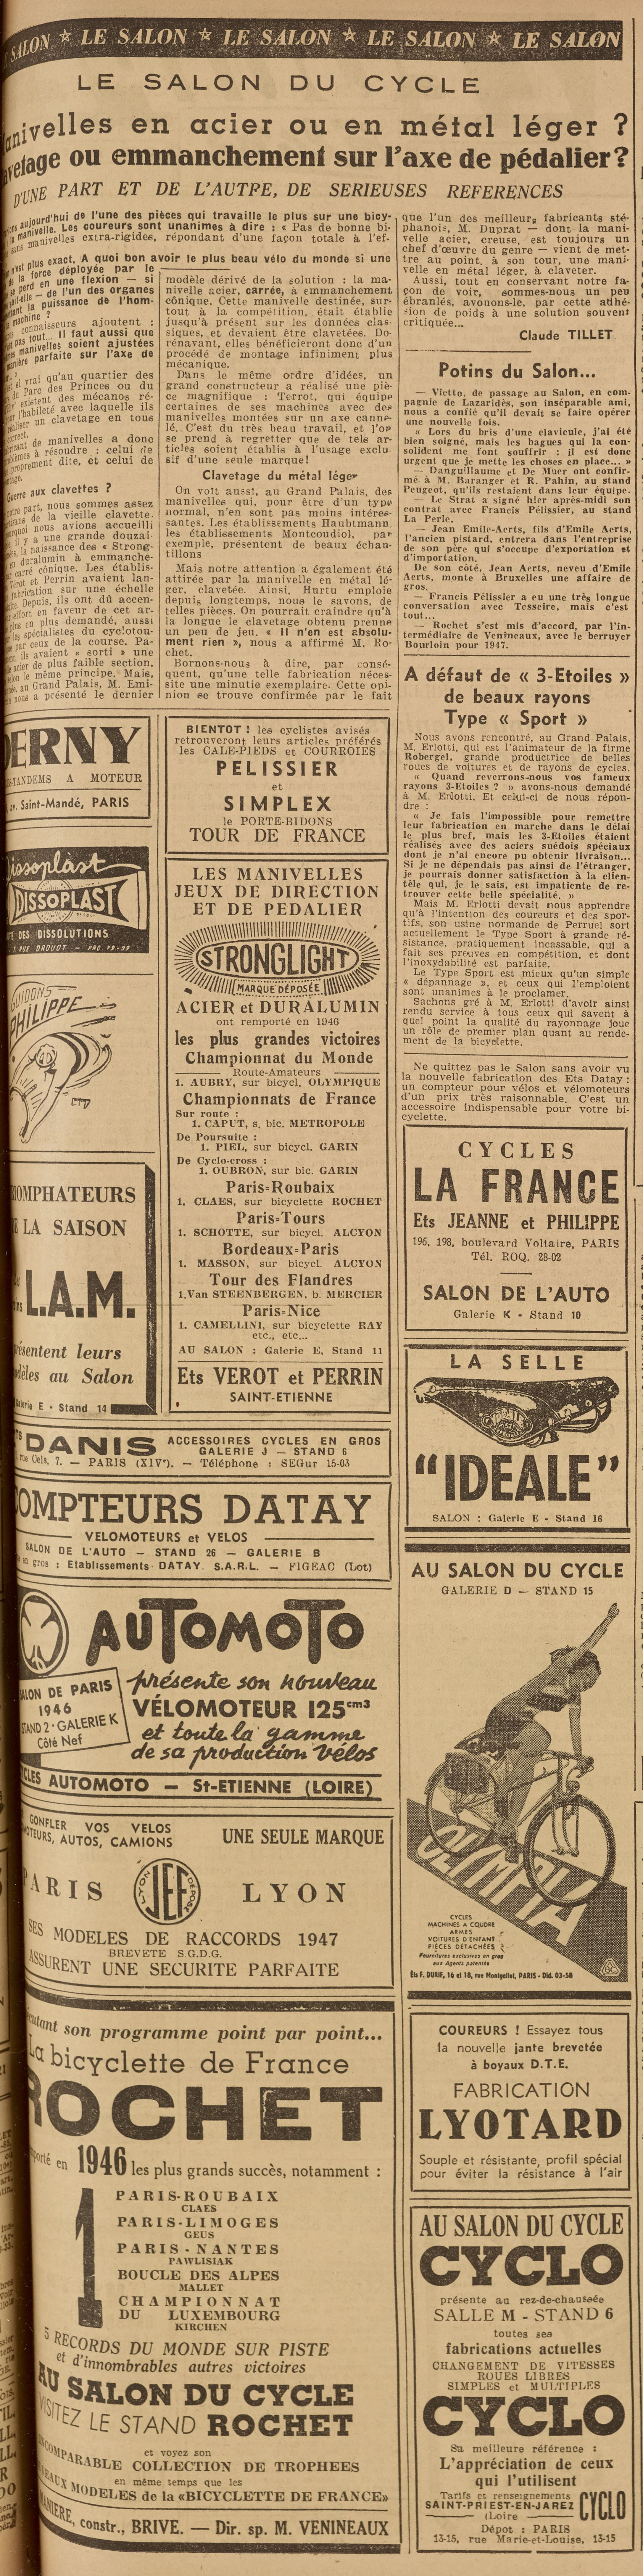 Salon du Cycle octobre 1946, Paris, le Grand Palais - L'Equipe - Cyclo Magazine 230214050439721918111993